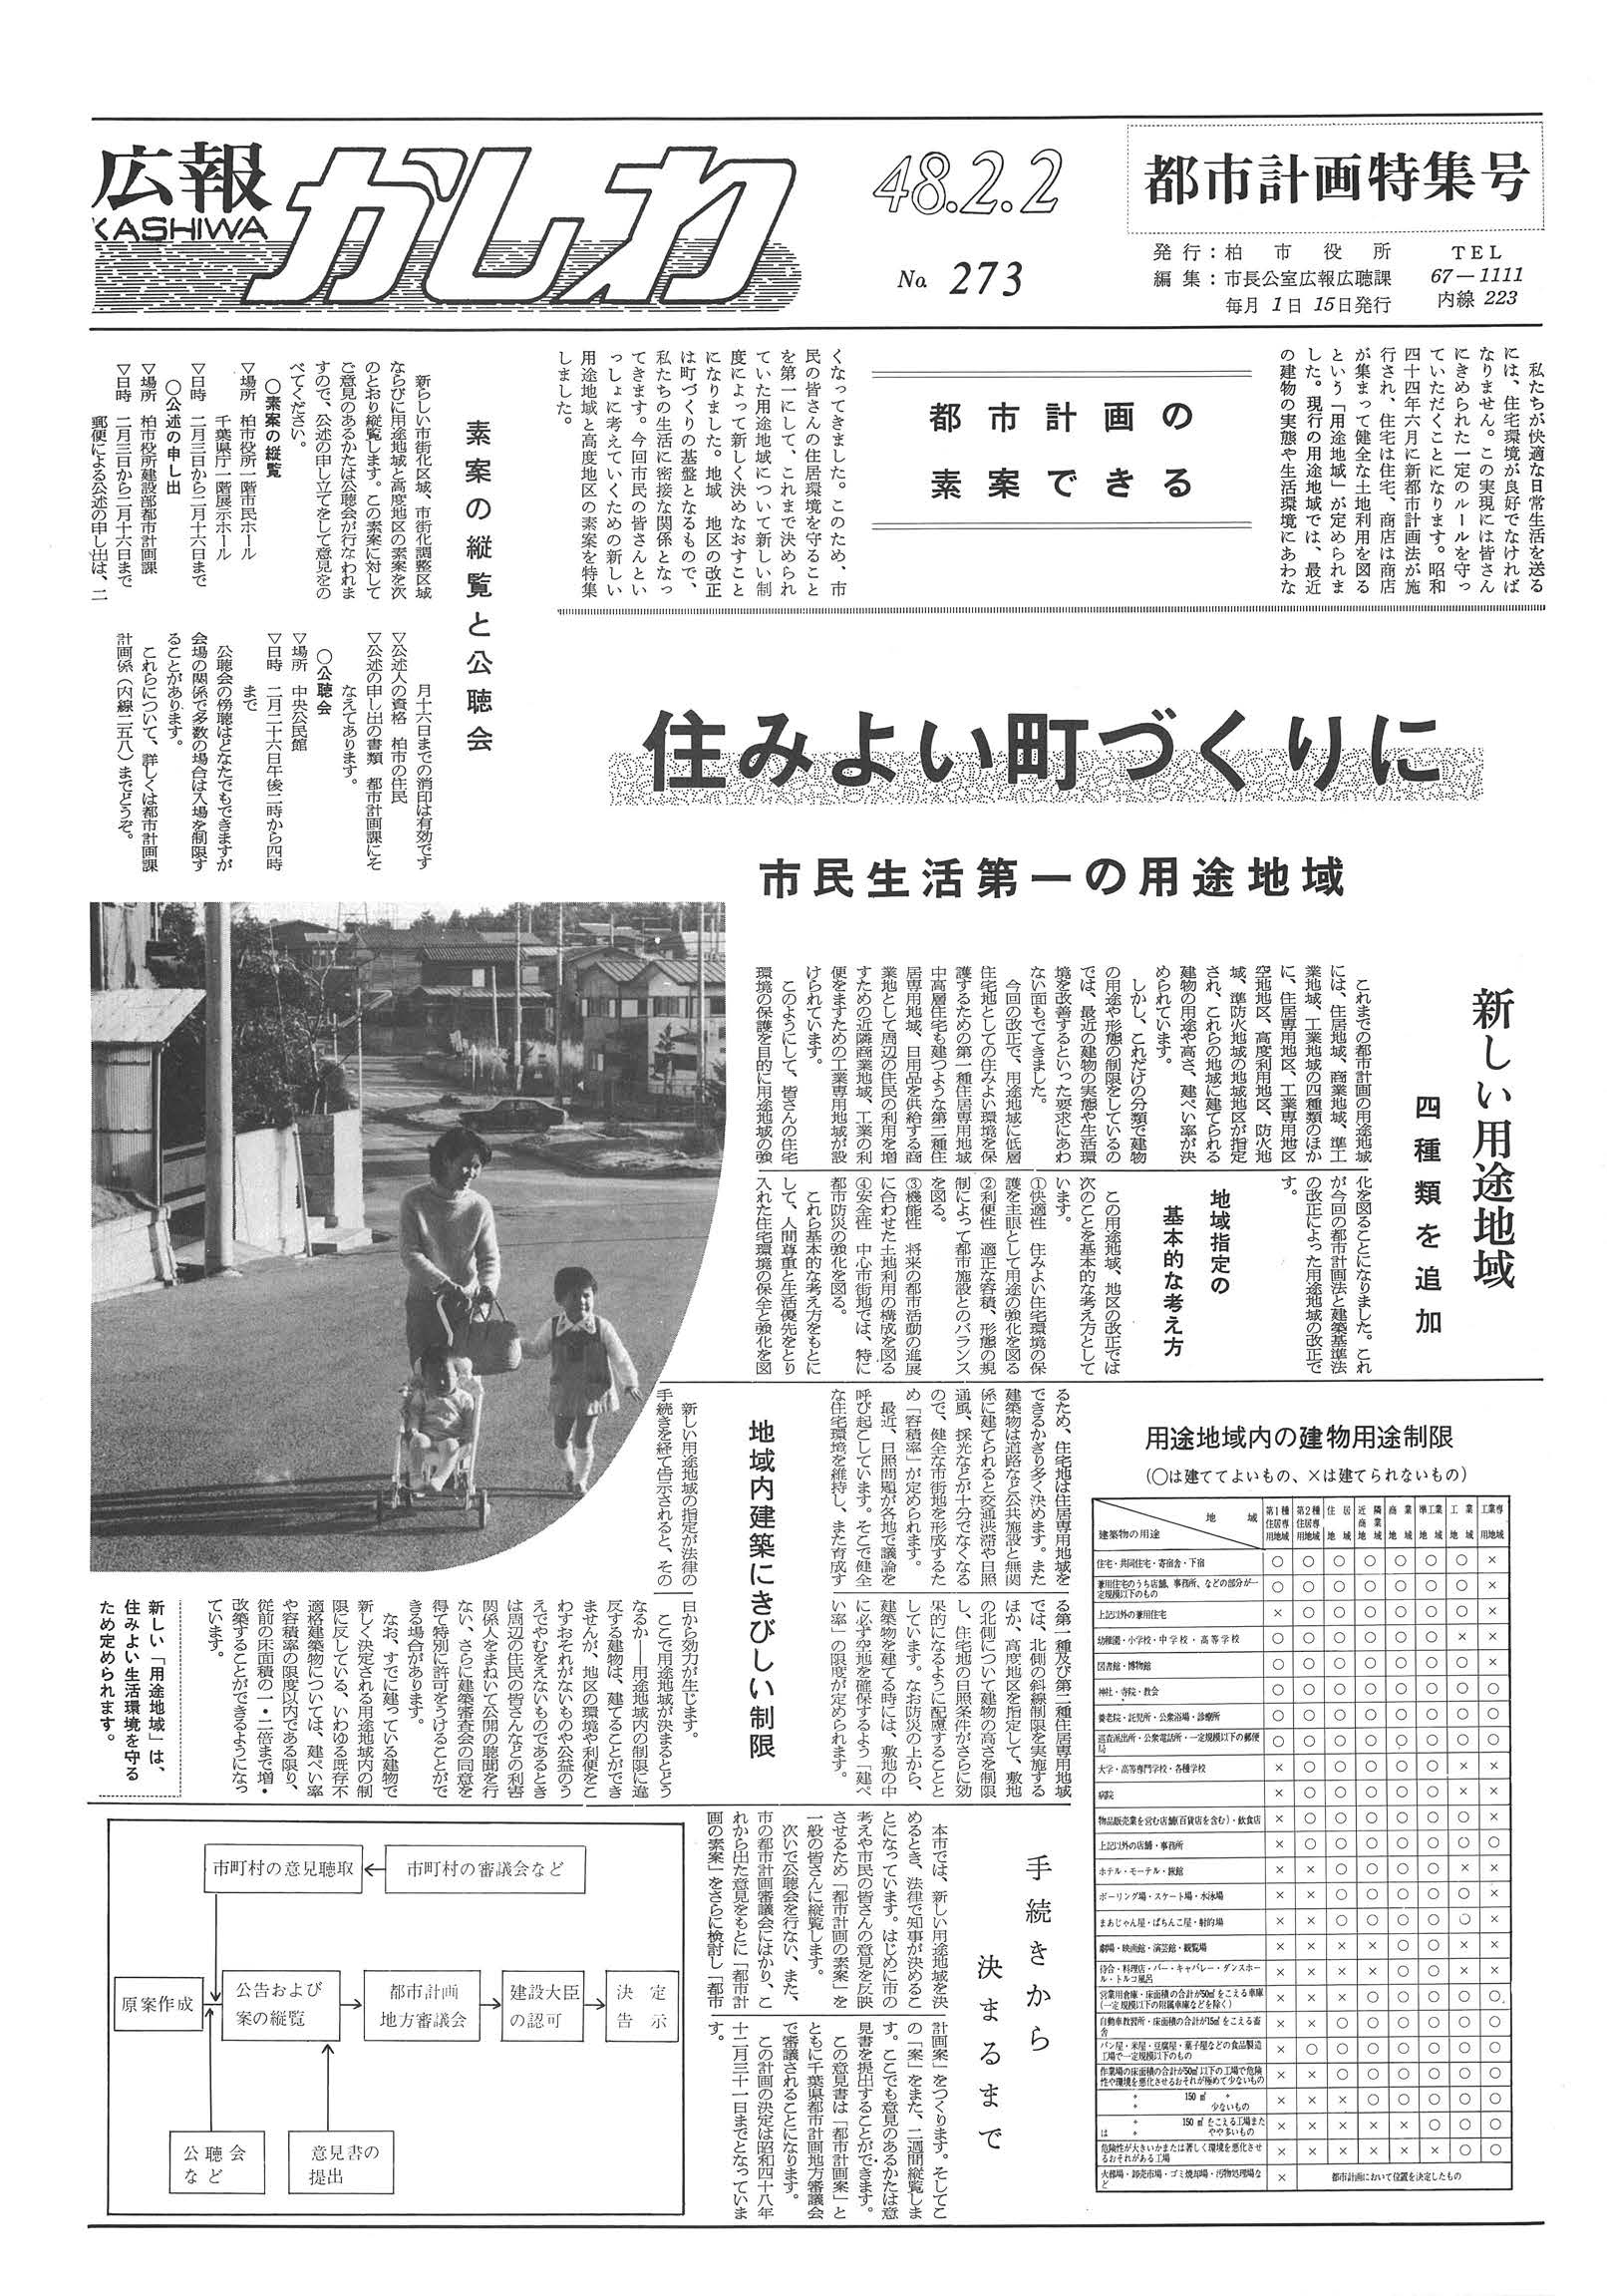 広報かしわ　昭和48年2月2日発行　273号